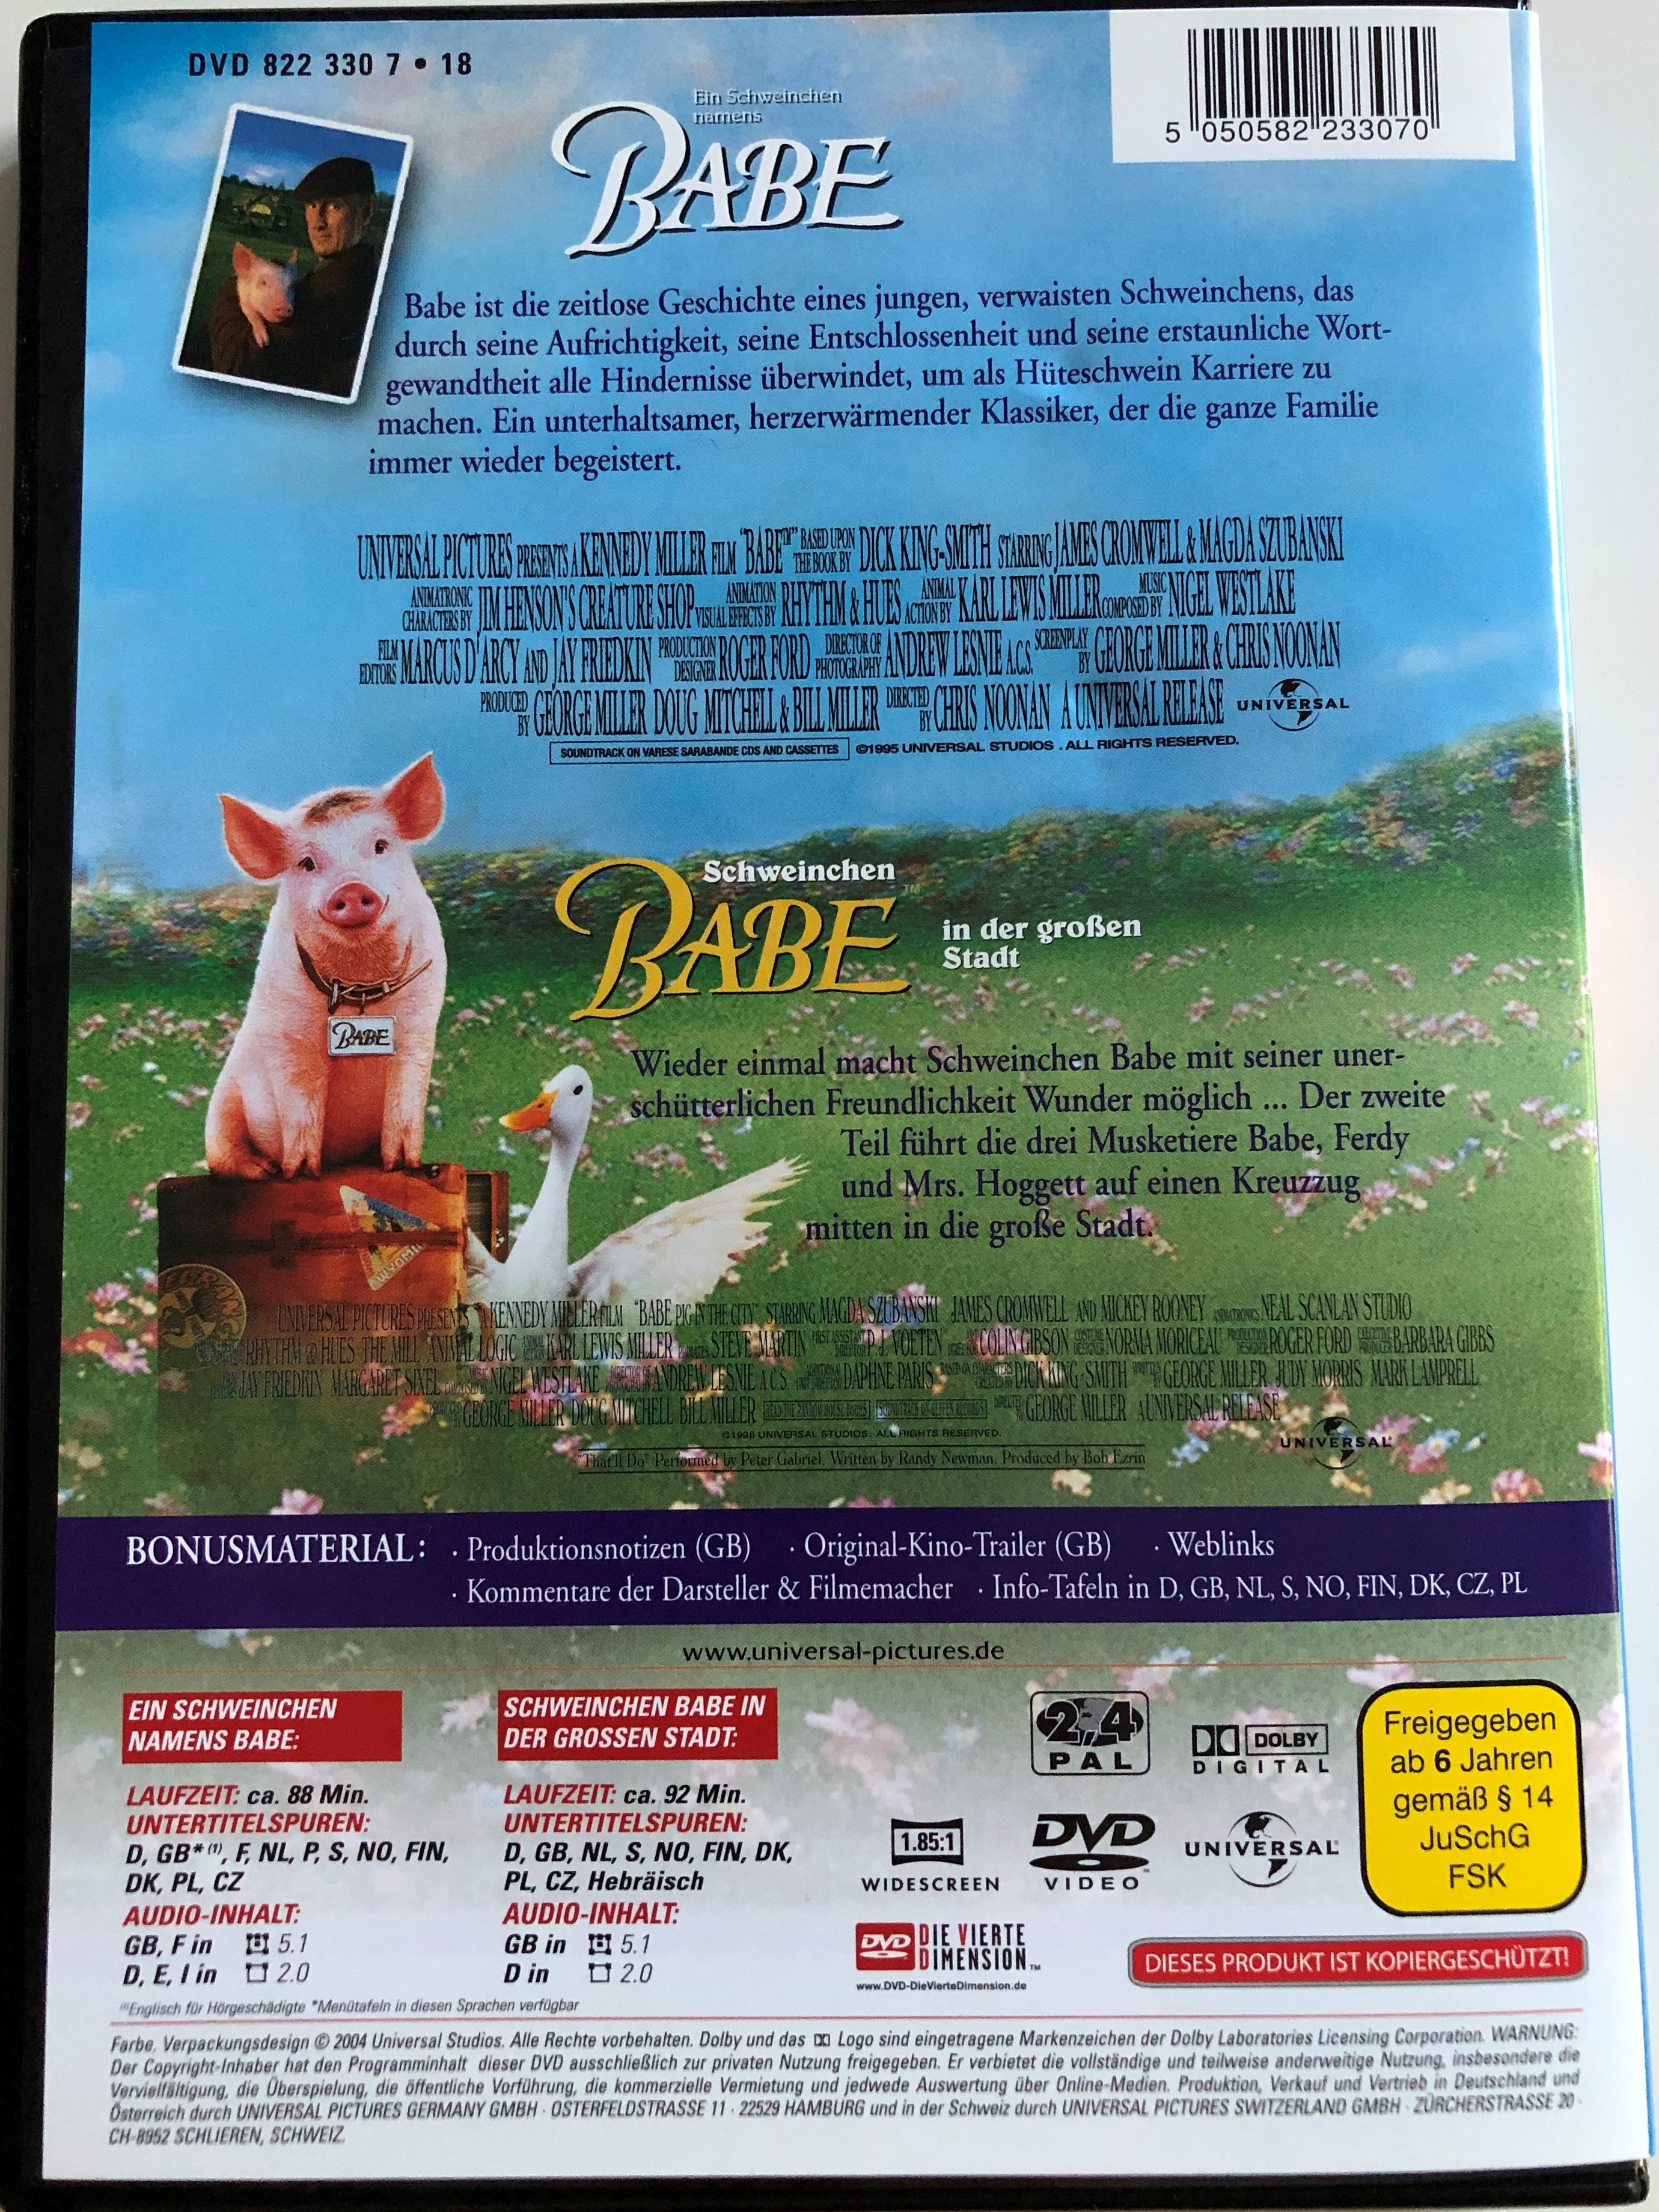 babe-babe-pig-in-the-city-dvd-double-pack-2004-ein-schweinchen-namens-babe-schweinchen-babe-in-der-gro-en-stadt-dvd-doppelpack-directed-by-chris-noonan-starring-james-cromwell-magda-szubanski-3-.jpg